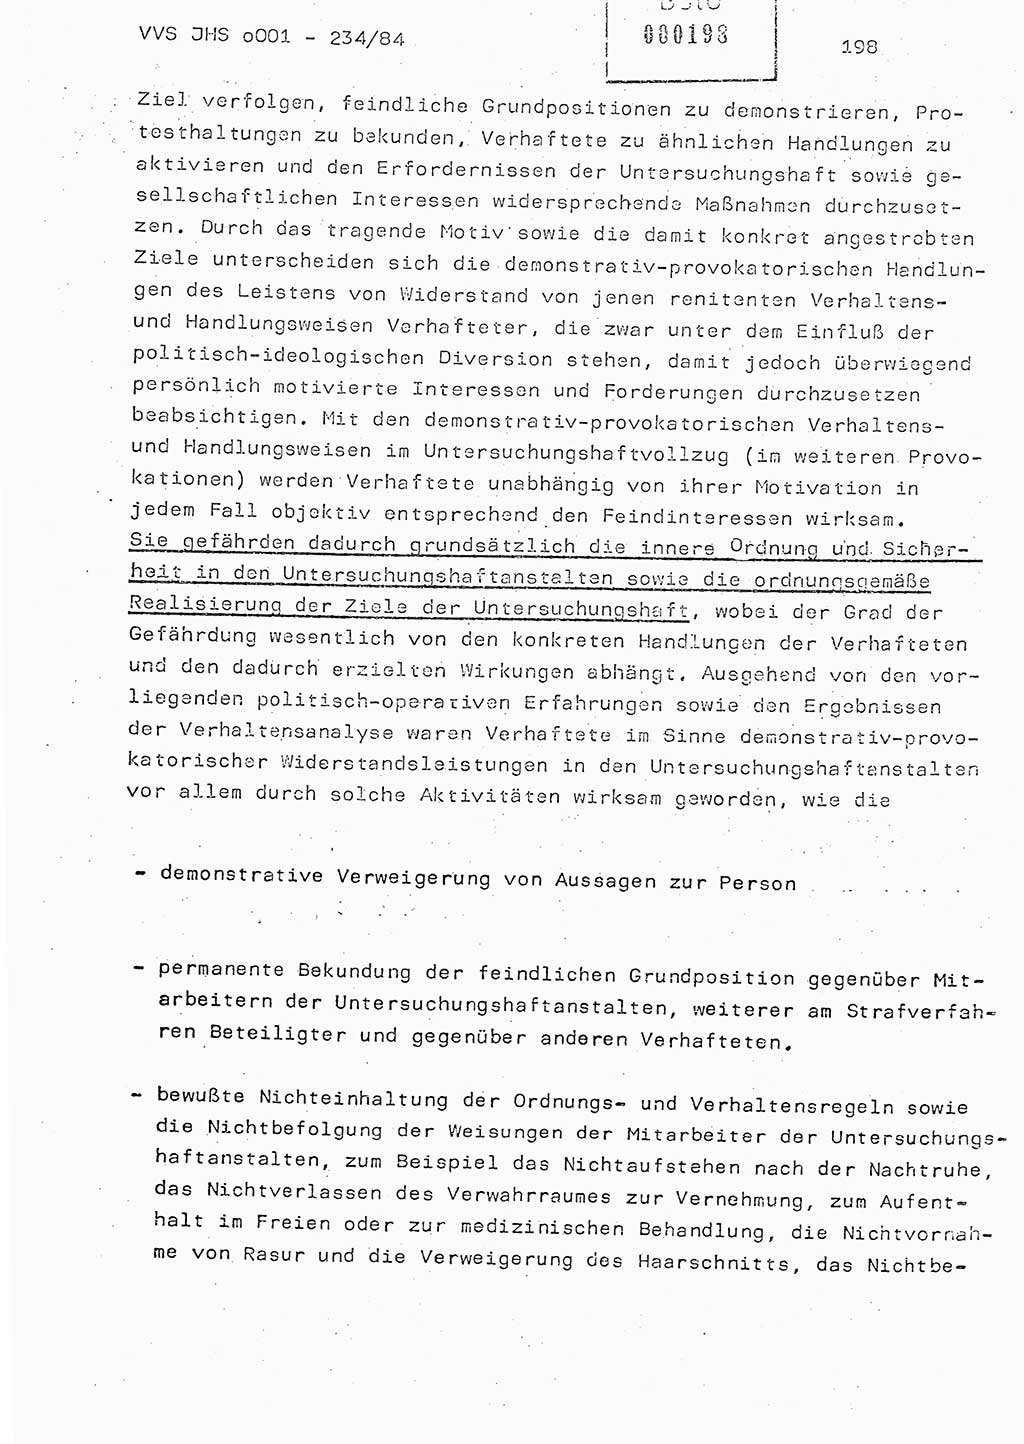 Dissertation Oberst Siegfried Rataizick (Abt. ⅩⅣ), Oberstleutnant Volkmar Heinz (Abt. ⅩⅣ), Oberstleutnant Werner Stein (HA Ⅸ), Hauptmann Heinz Conrad (JHS), Ministerium für Staatssicherheit (MfS) [Deutsche Demokratische Republik (DDR)], Juristische Hochschule (JHS), Vertrauliche Verschlußsache (VVS) o001-234/84, Potsdam 1984, Seite 198 (Diss. MfS DDR JHS VVS o001-234/84 1984, S. 198)